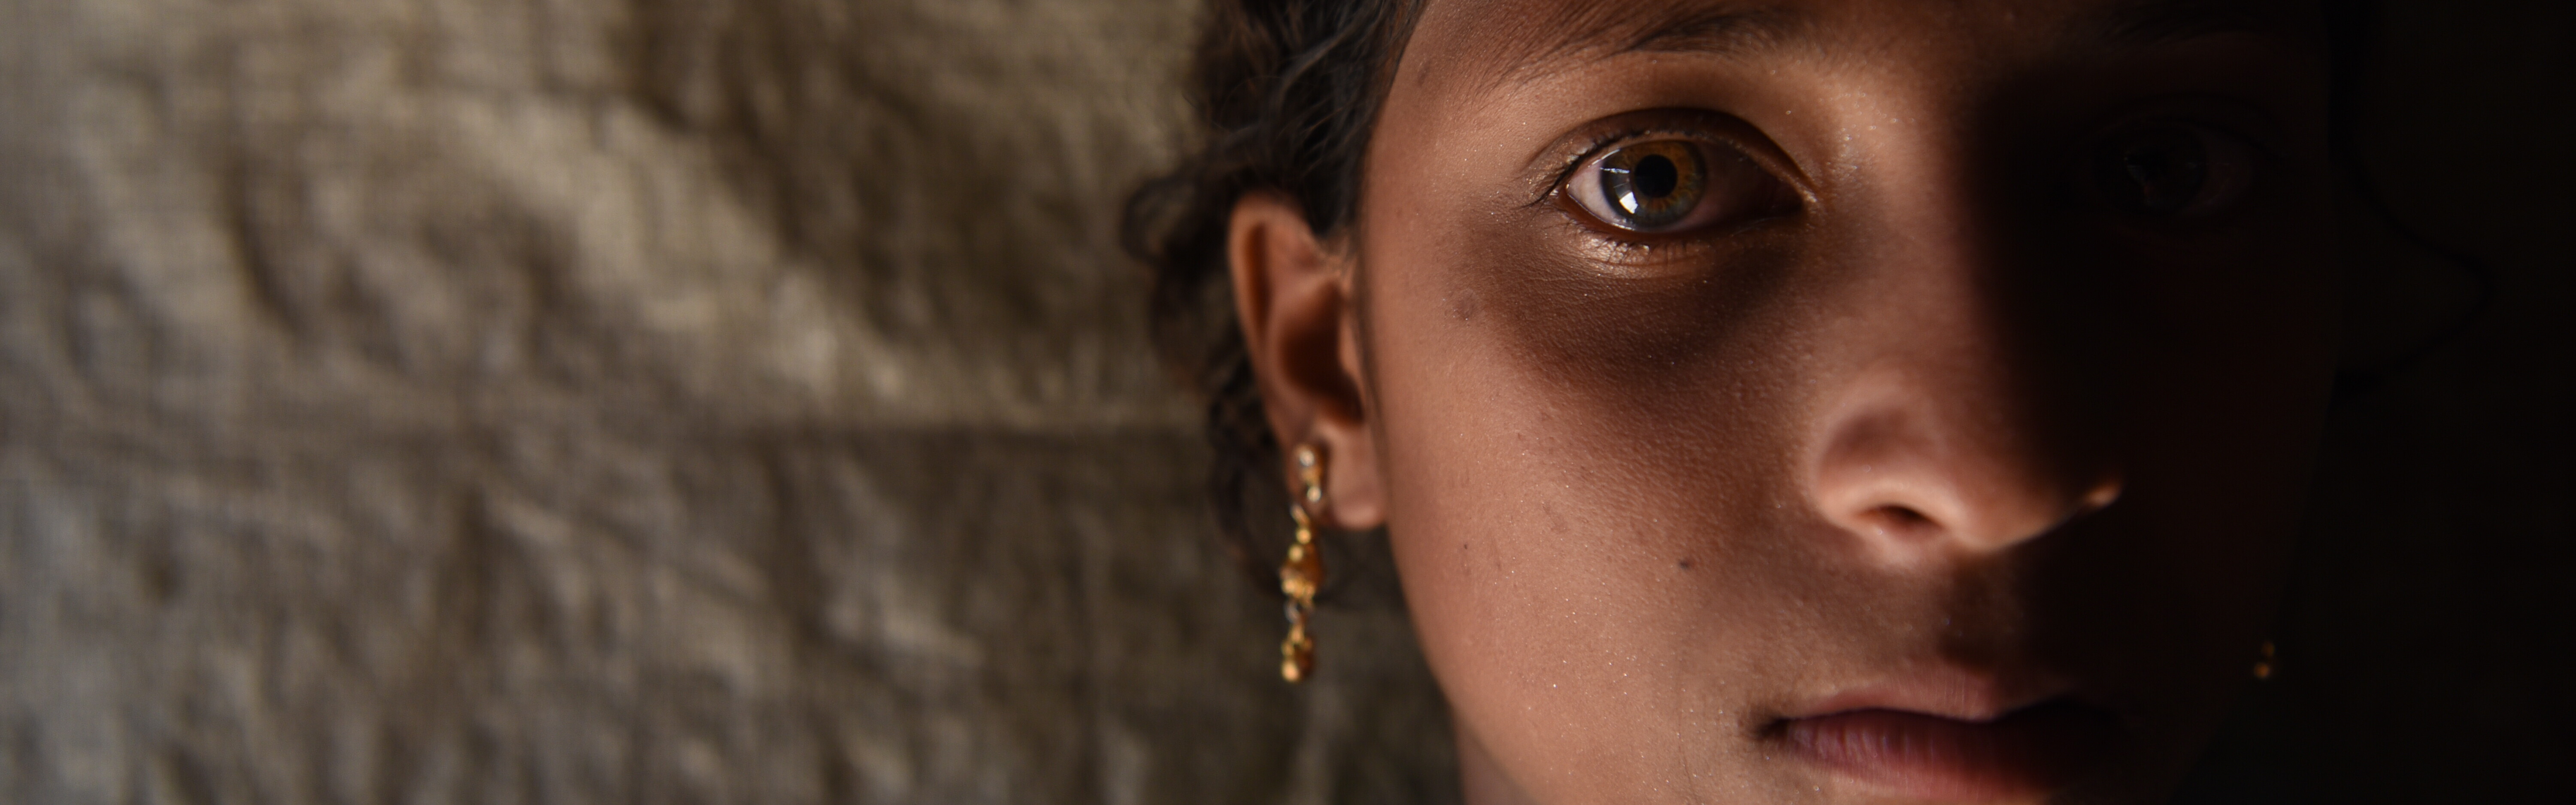 Ein geflüchtetes Rohingya-Mädchen blickt verängstigt in die Kamera